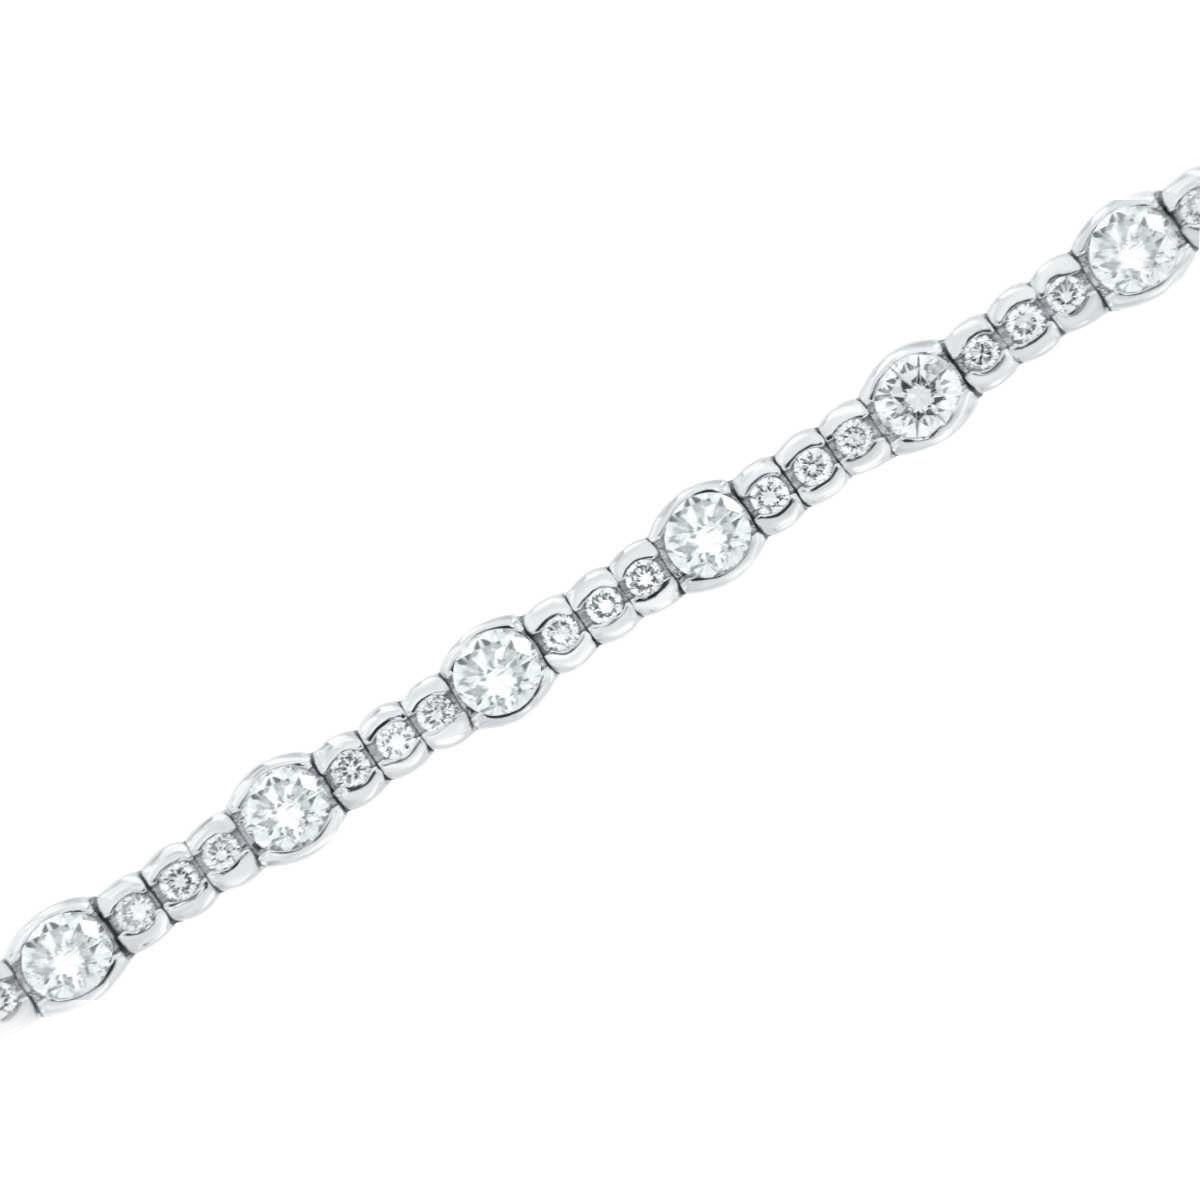 Diese atemberaubende Armband ist ein vierundsechzig ( 64) Runde Brillanten halb Lünette gesetzt für ein Gewicht von 5,93 Karat. Sechszehn (16) der Diamanten haben jeweils 1/4 Karat (0,25 Karat) und achtundvierzig (48) der Diamanten haben jeweils